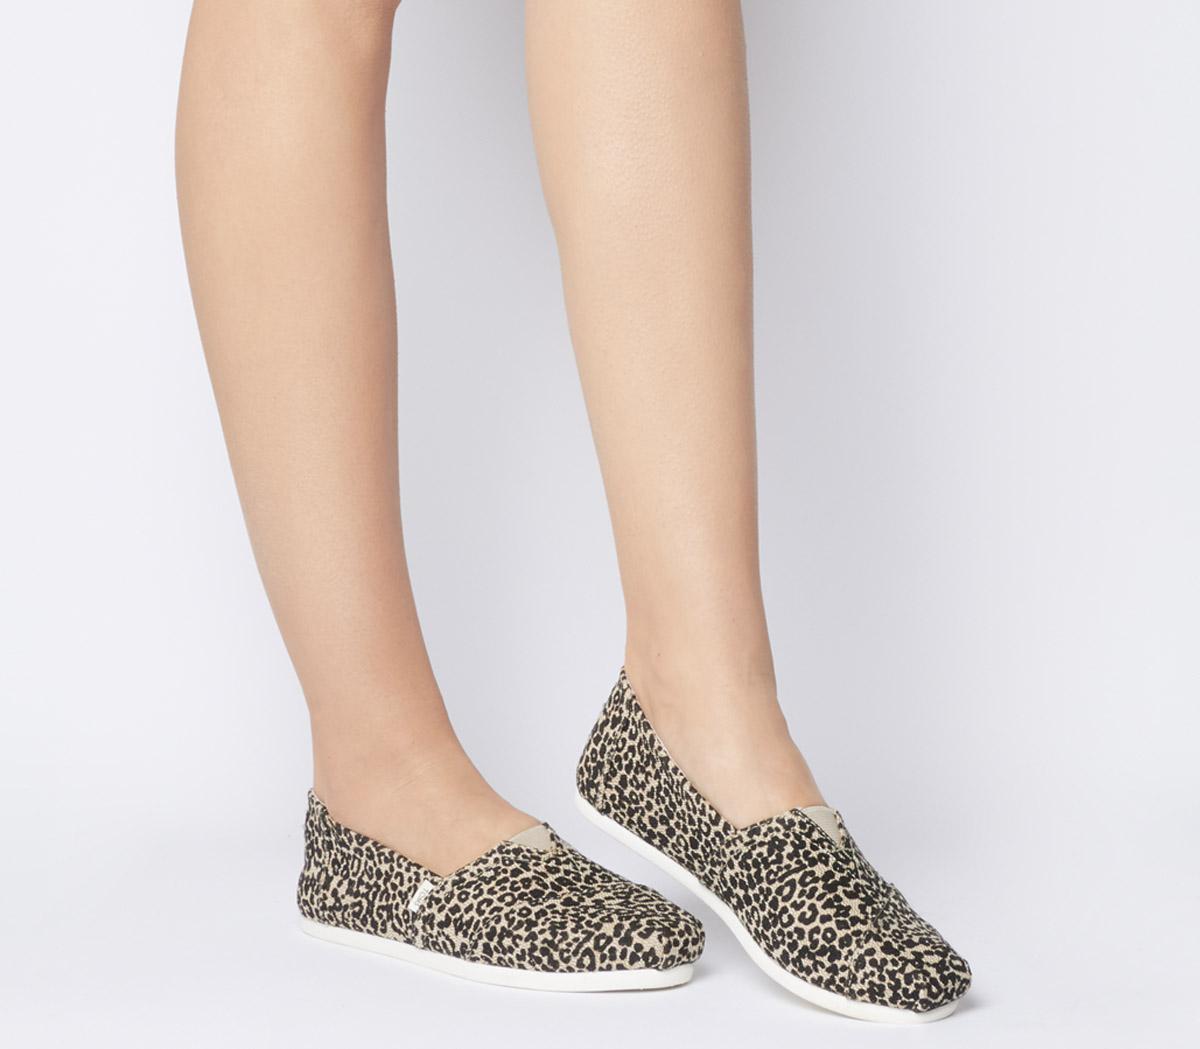 toms shoes leopard print